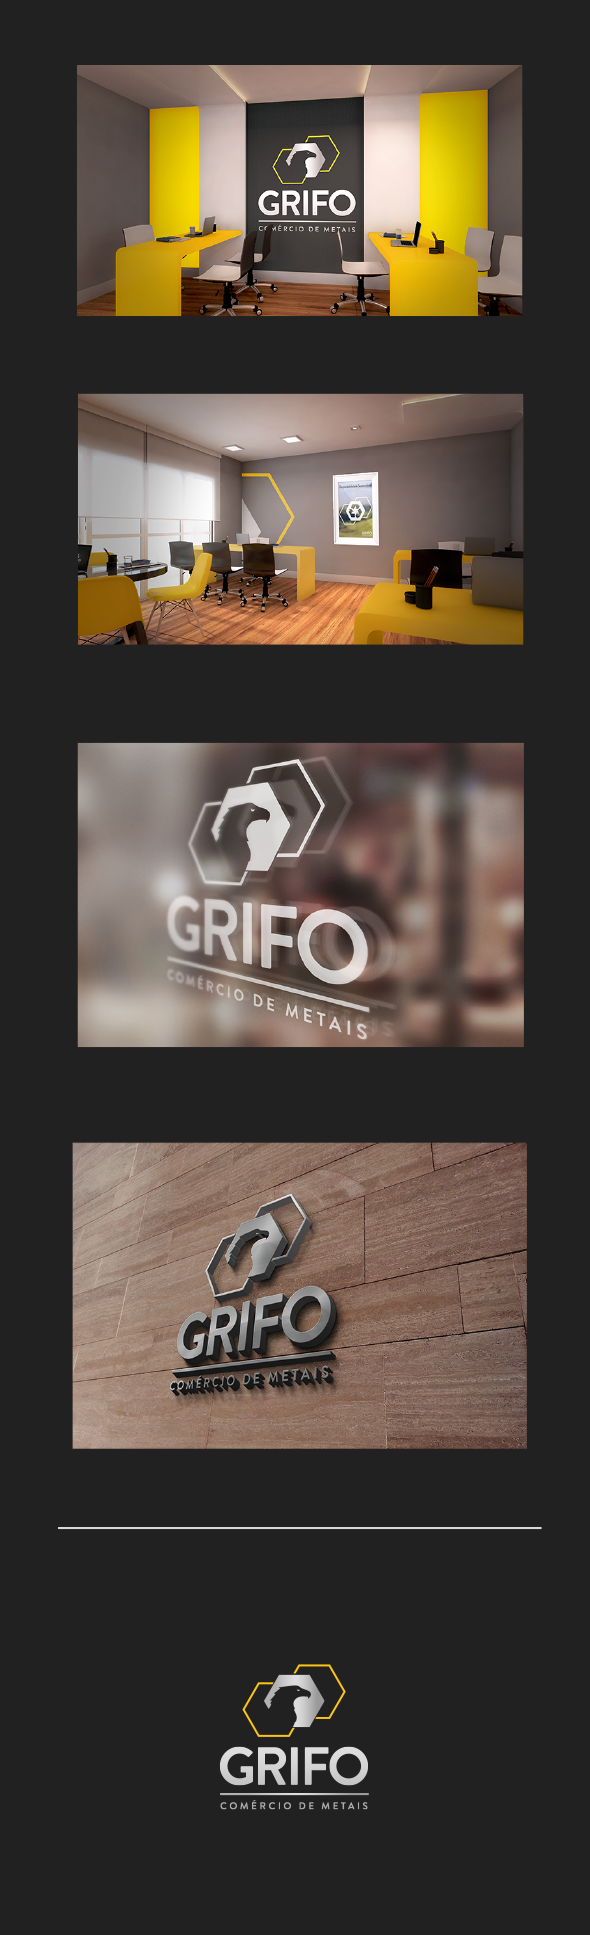 巴西Grifo钢材公司VI设计